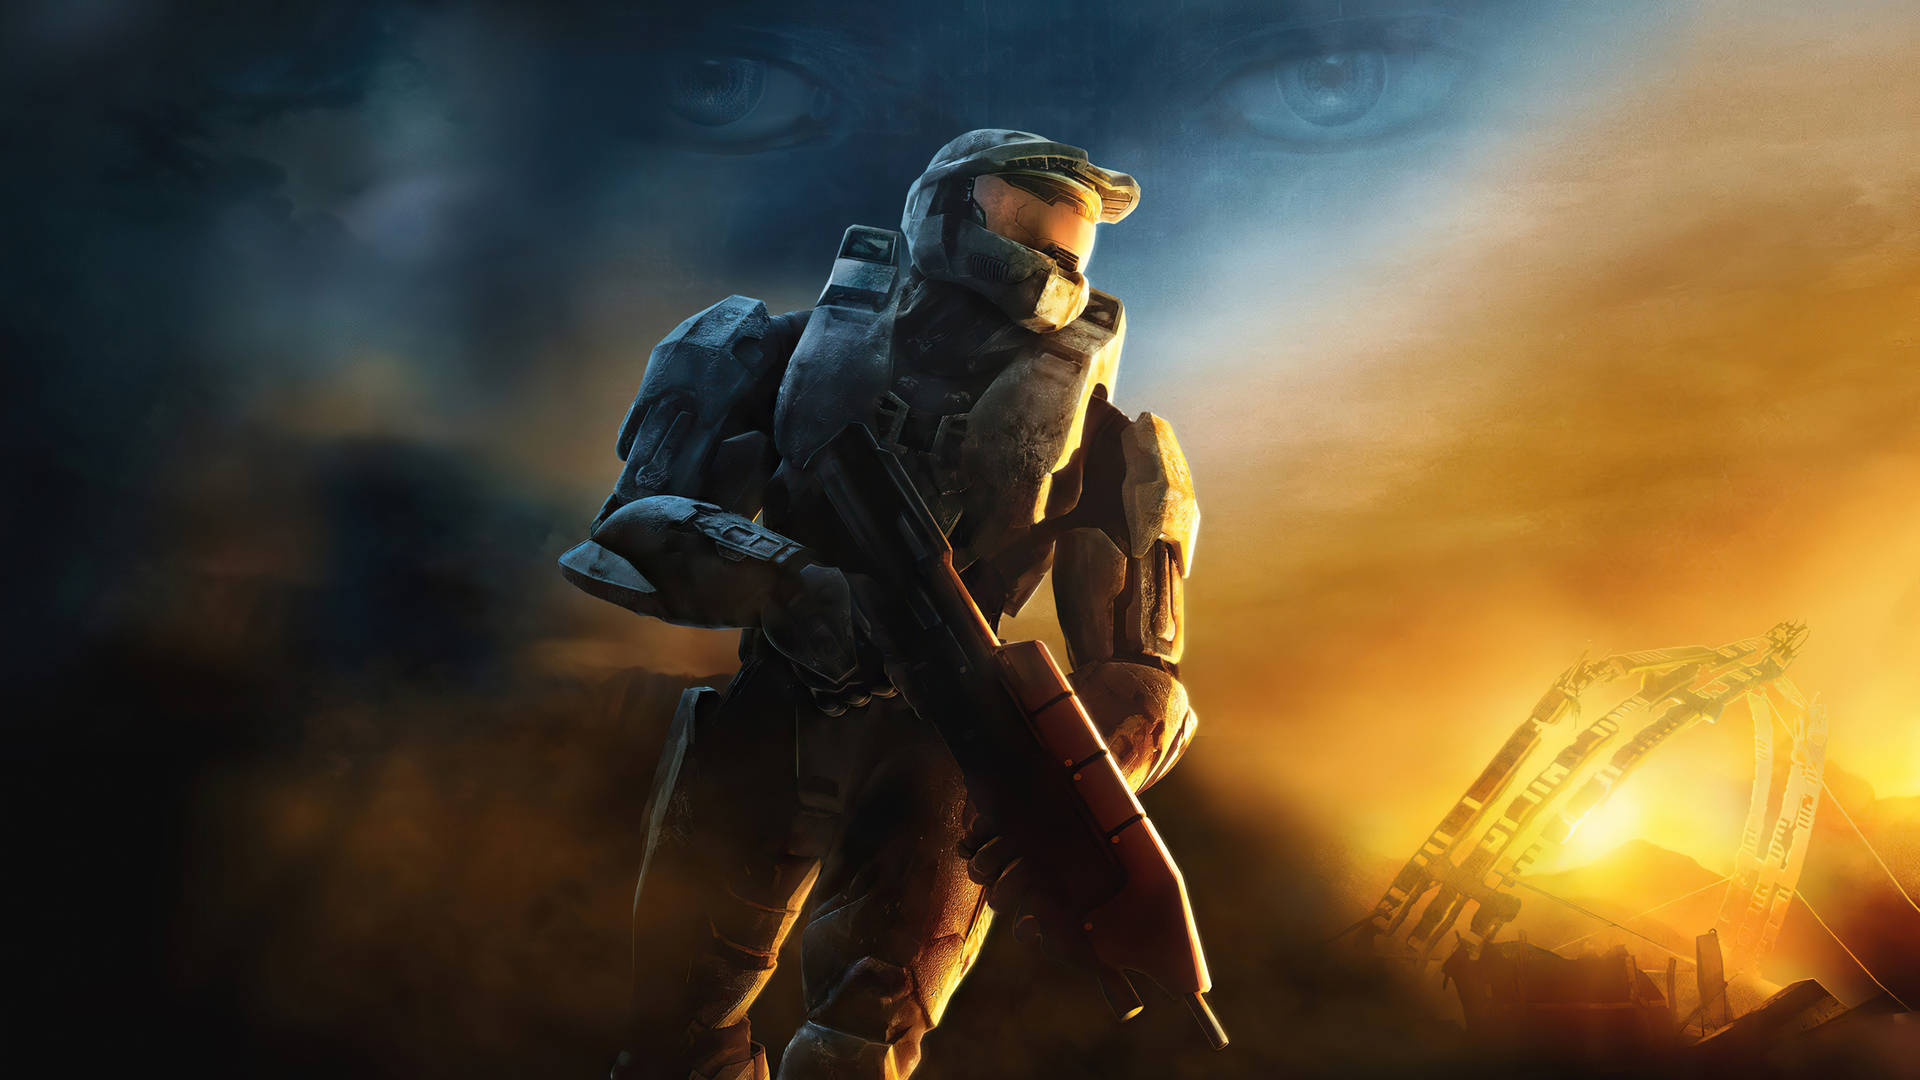 Epic Battle In Halo 3 Wallpaper